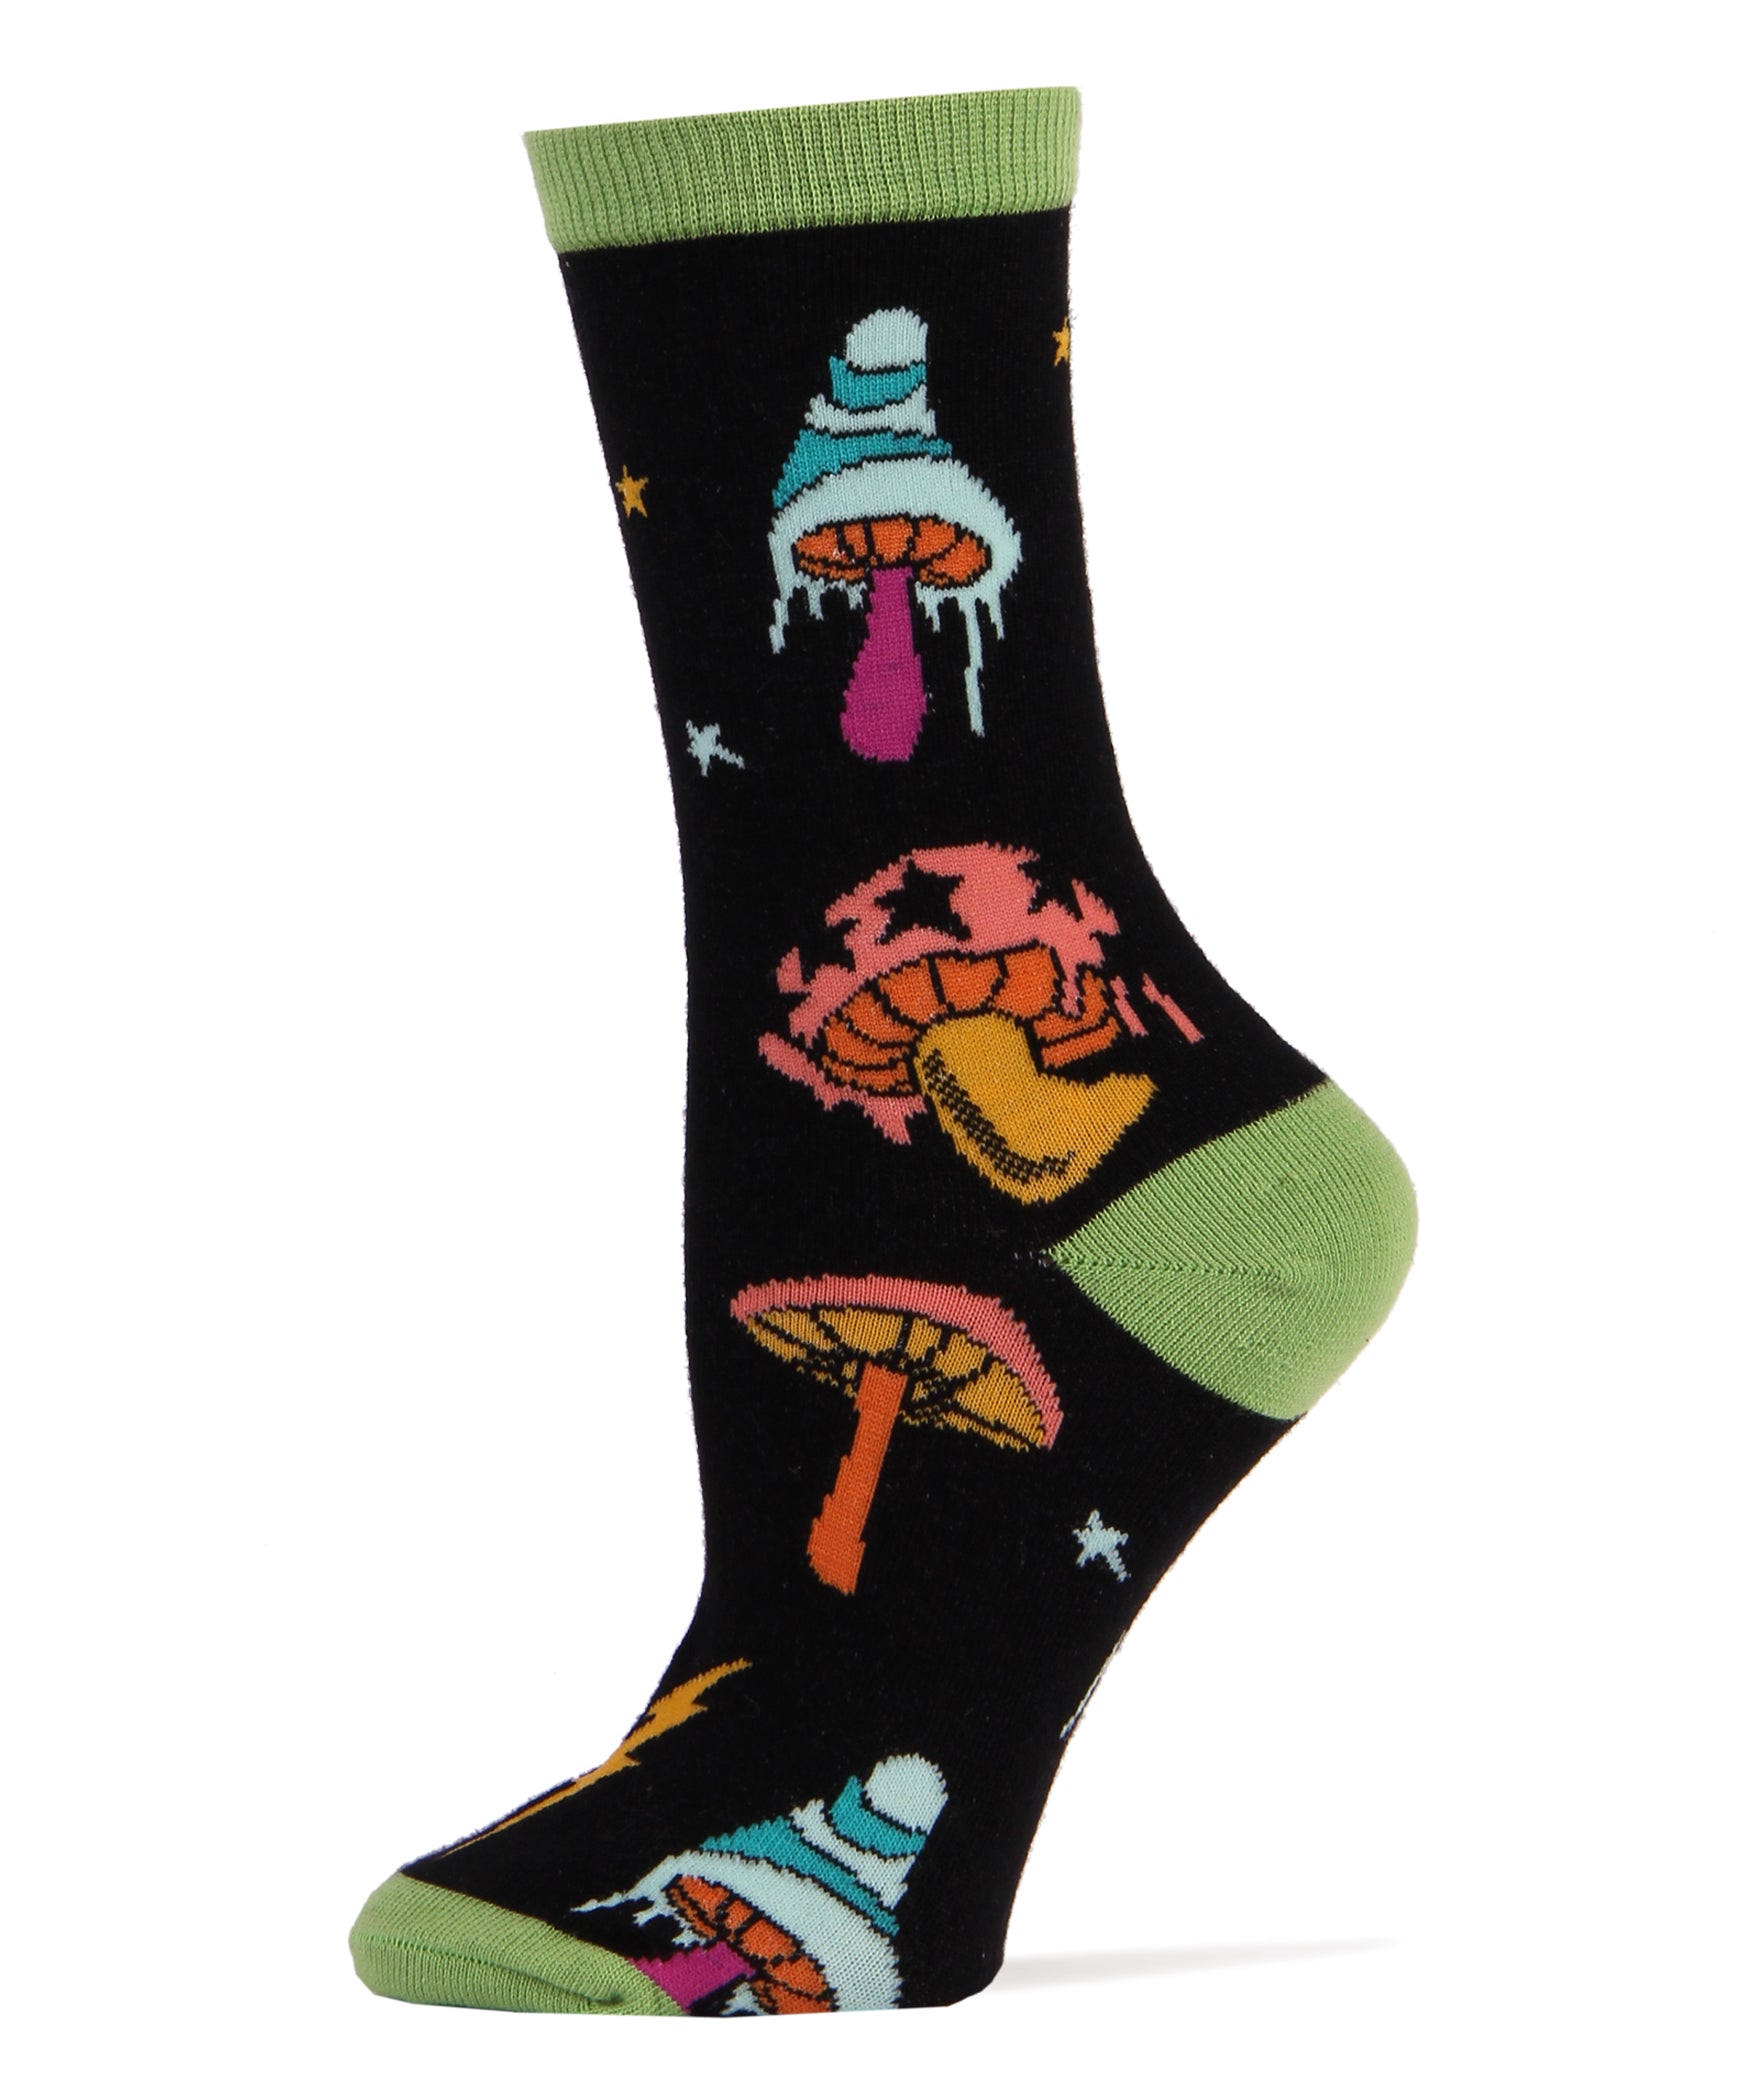 Wanna Bone Socks, Novelty Crew Socks For Women